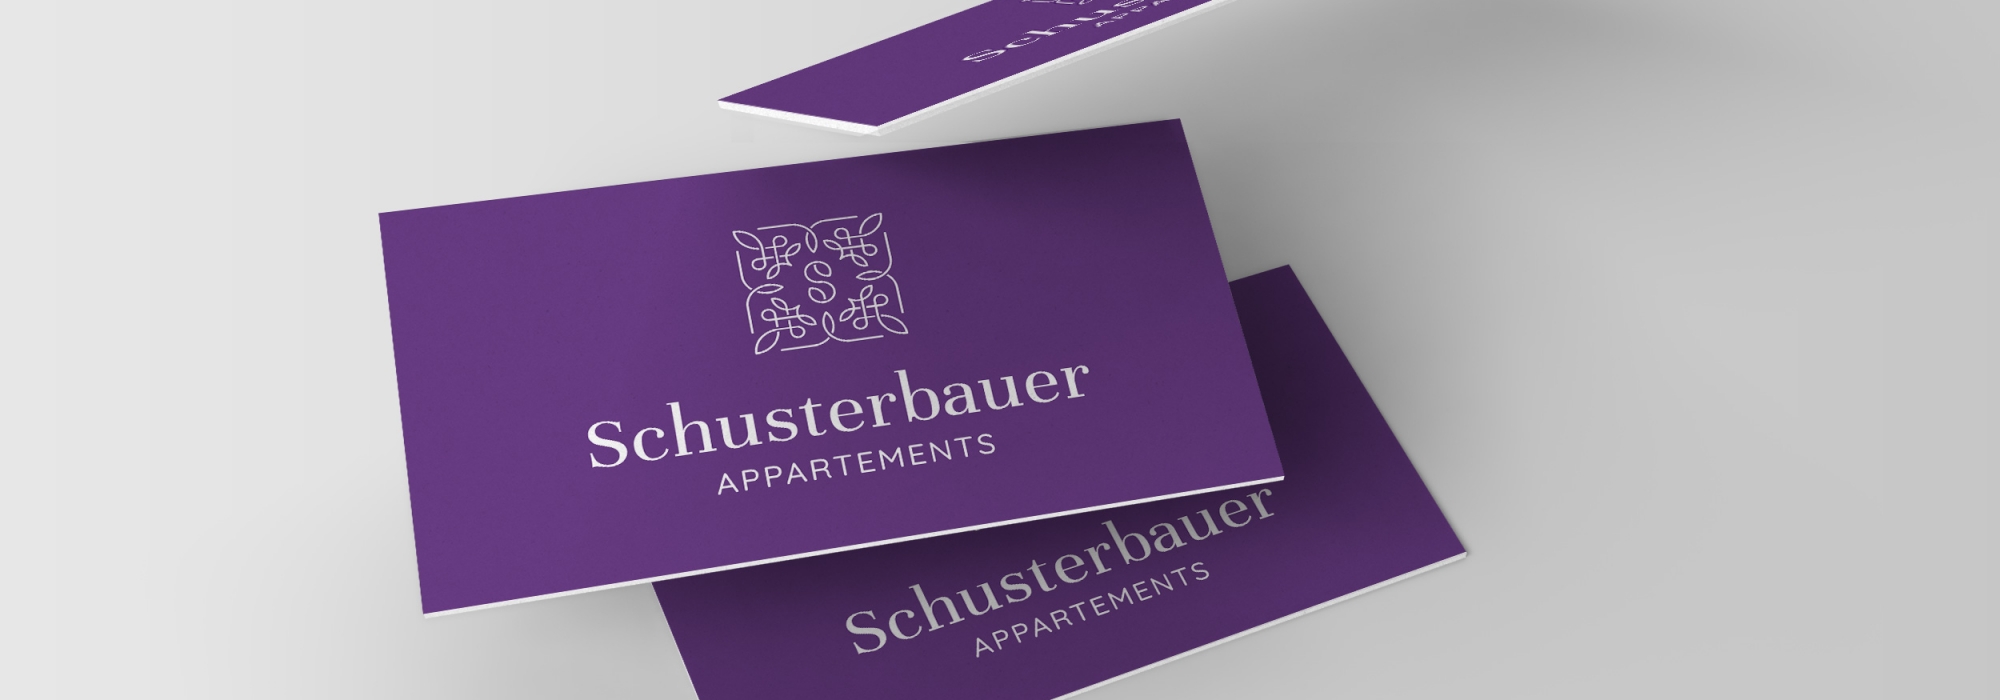 Schusterbauer Appartements